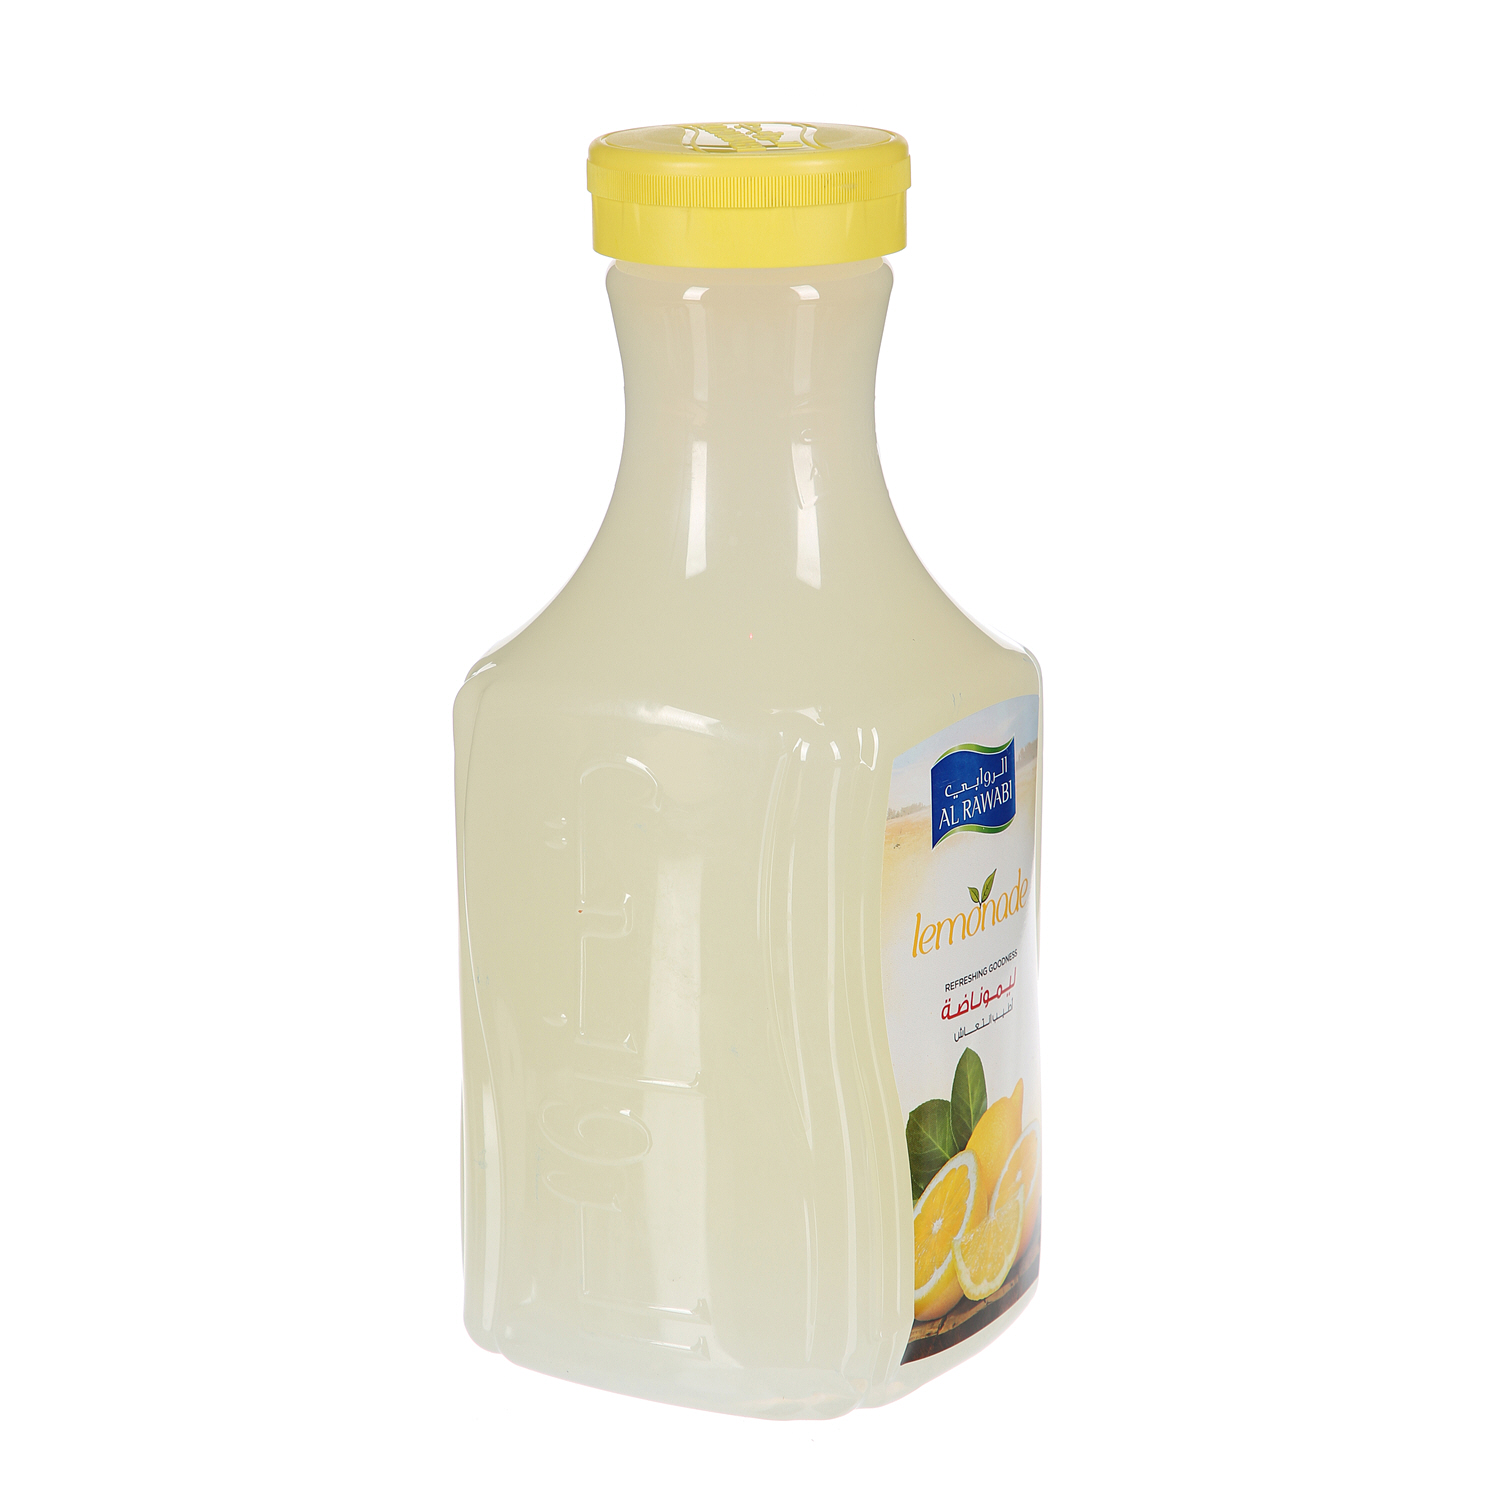 الروابي عصير الليمون 1.75 لتر